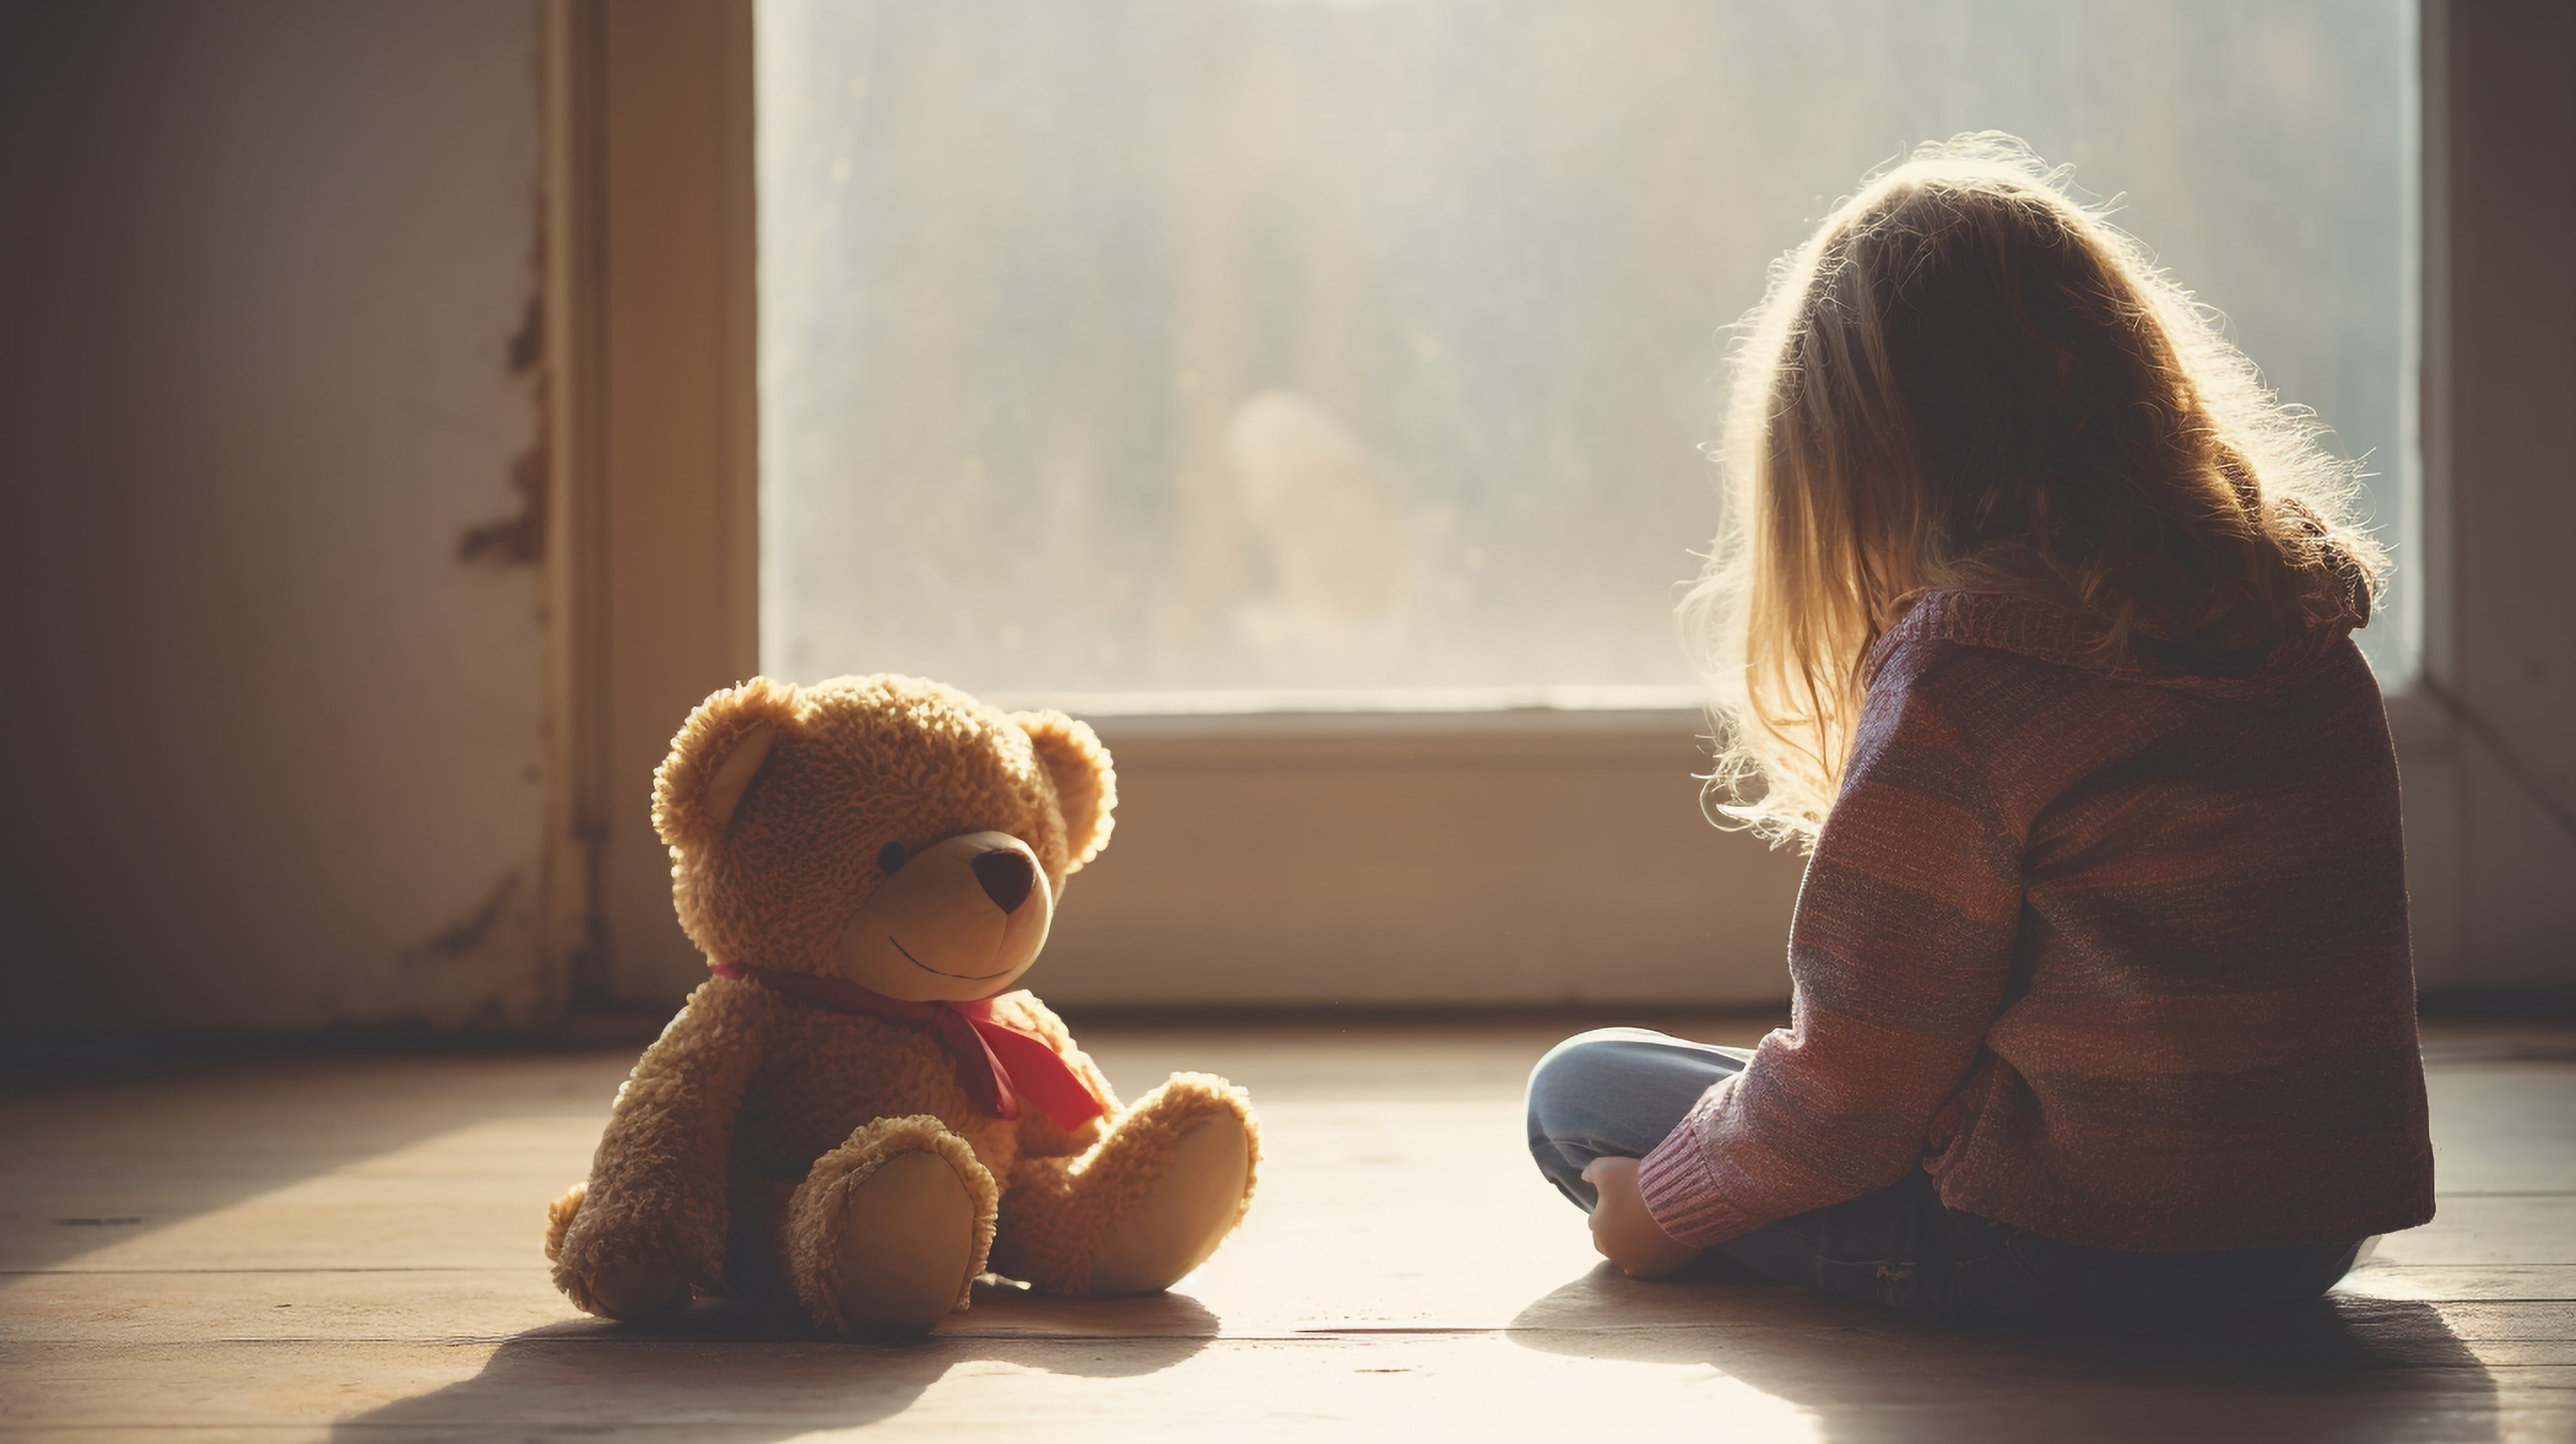 Kind sitzt einsam mit Teddy auf dem Boden